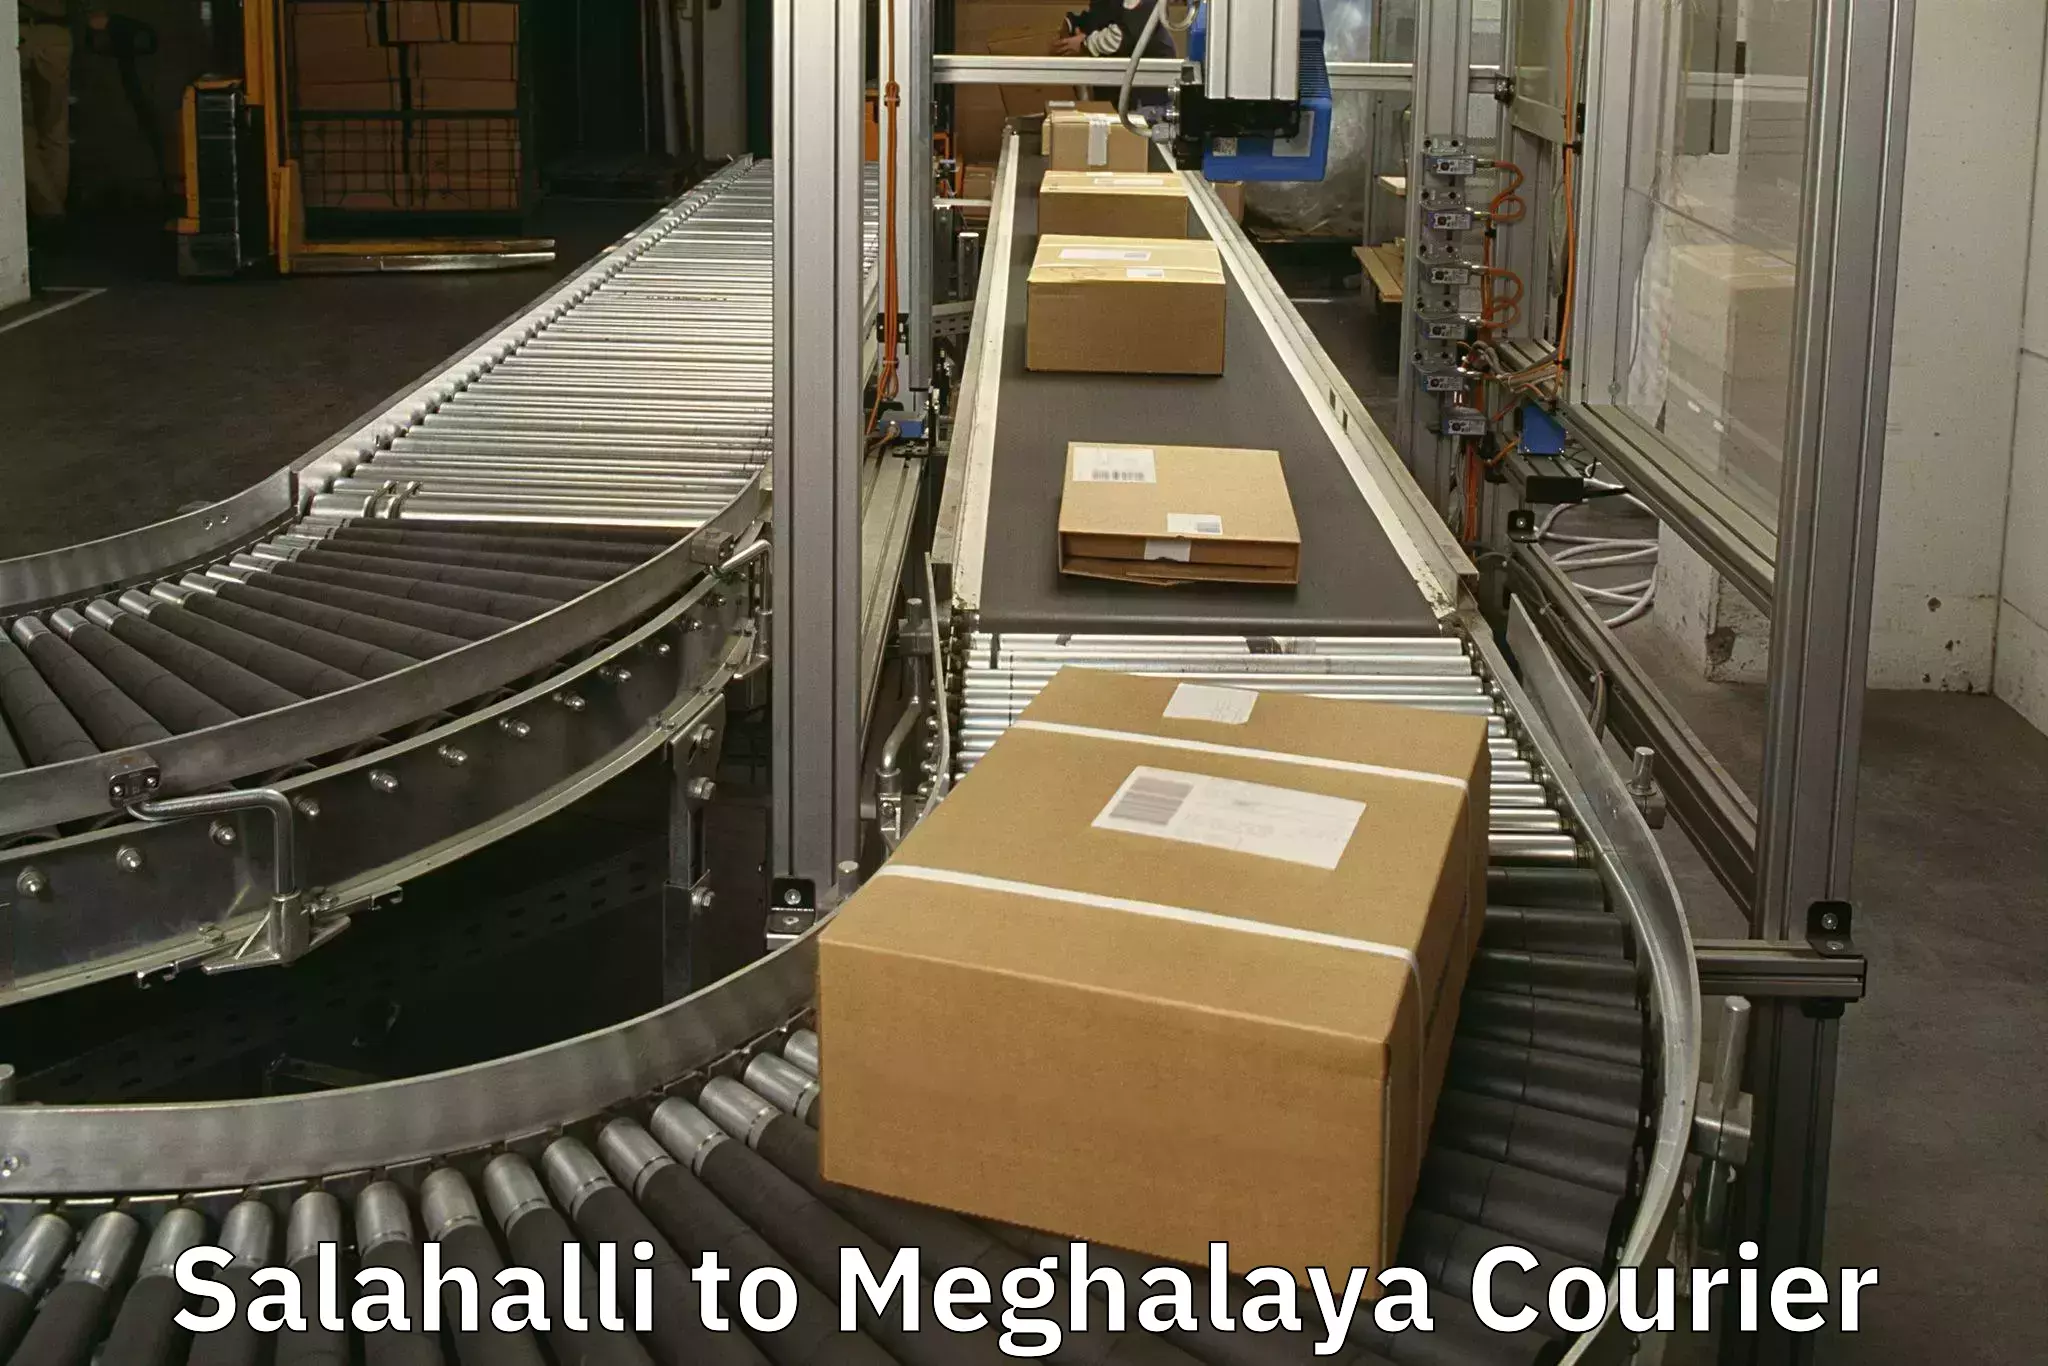 Luggage shipment specialists Salahalli to Umsaw